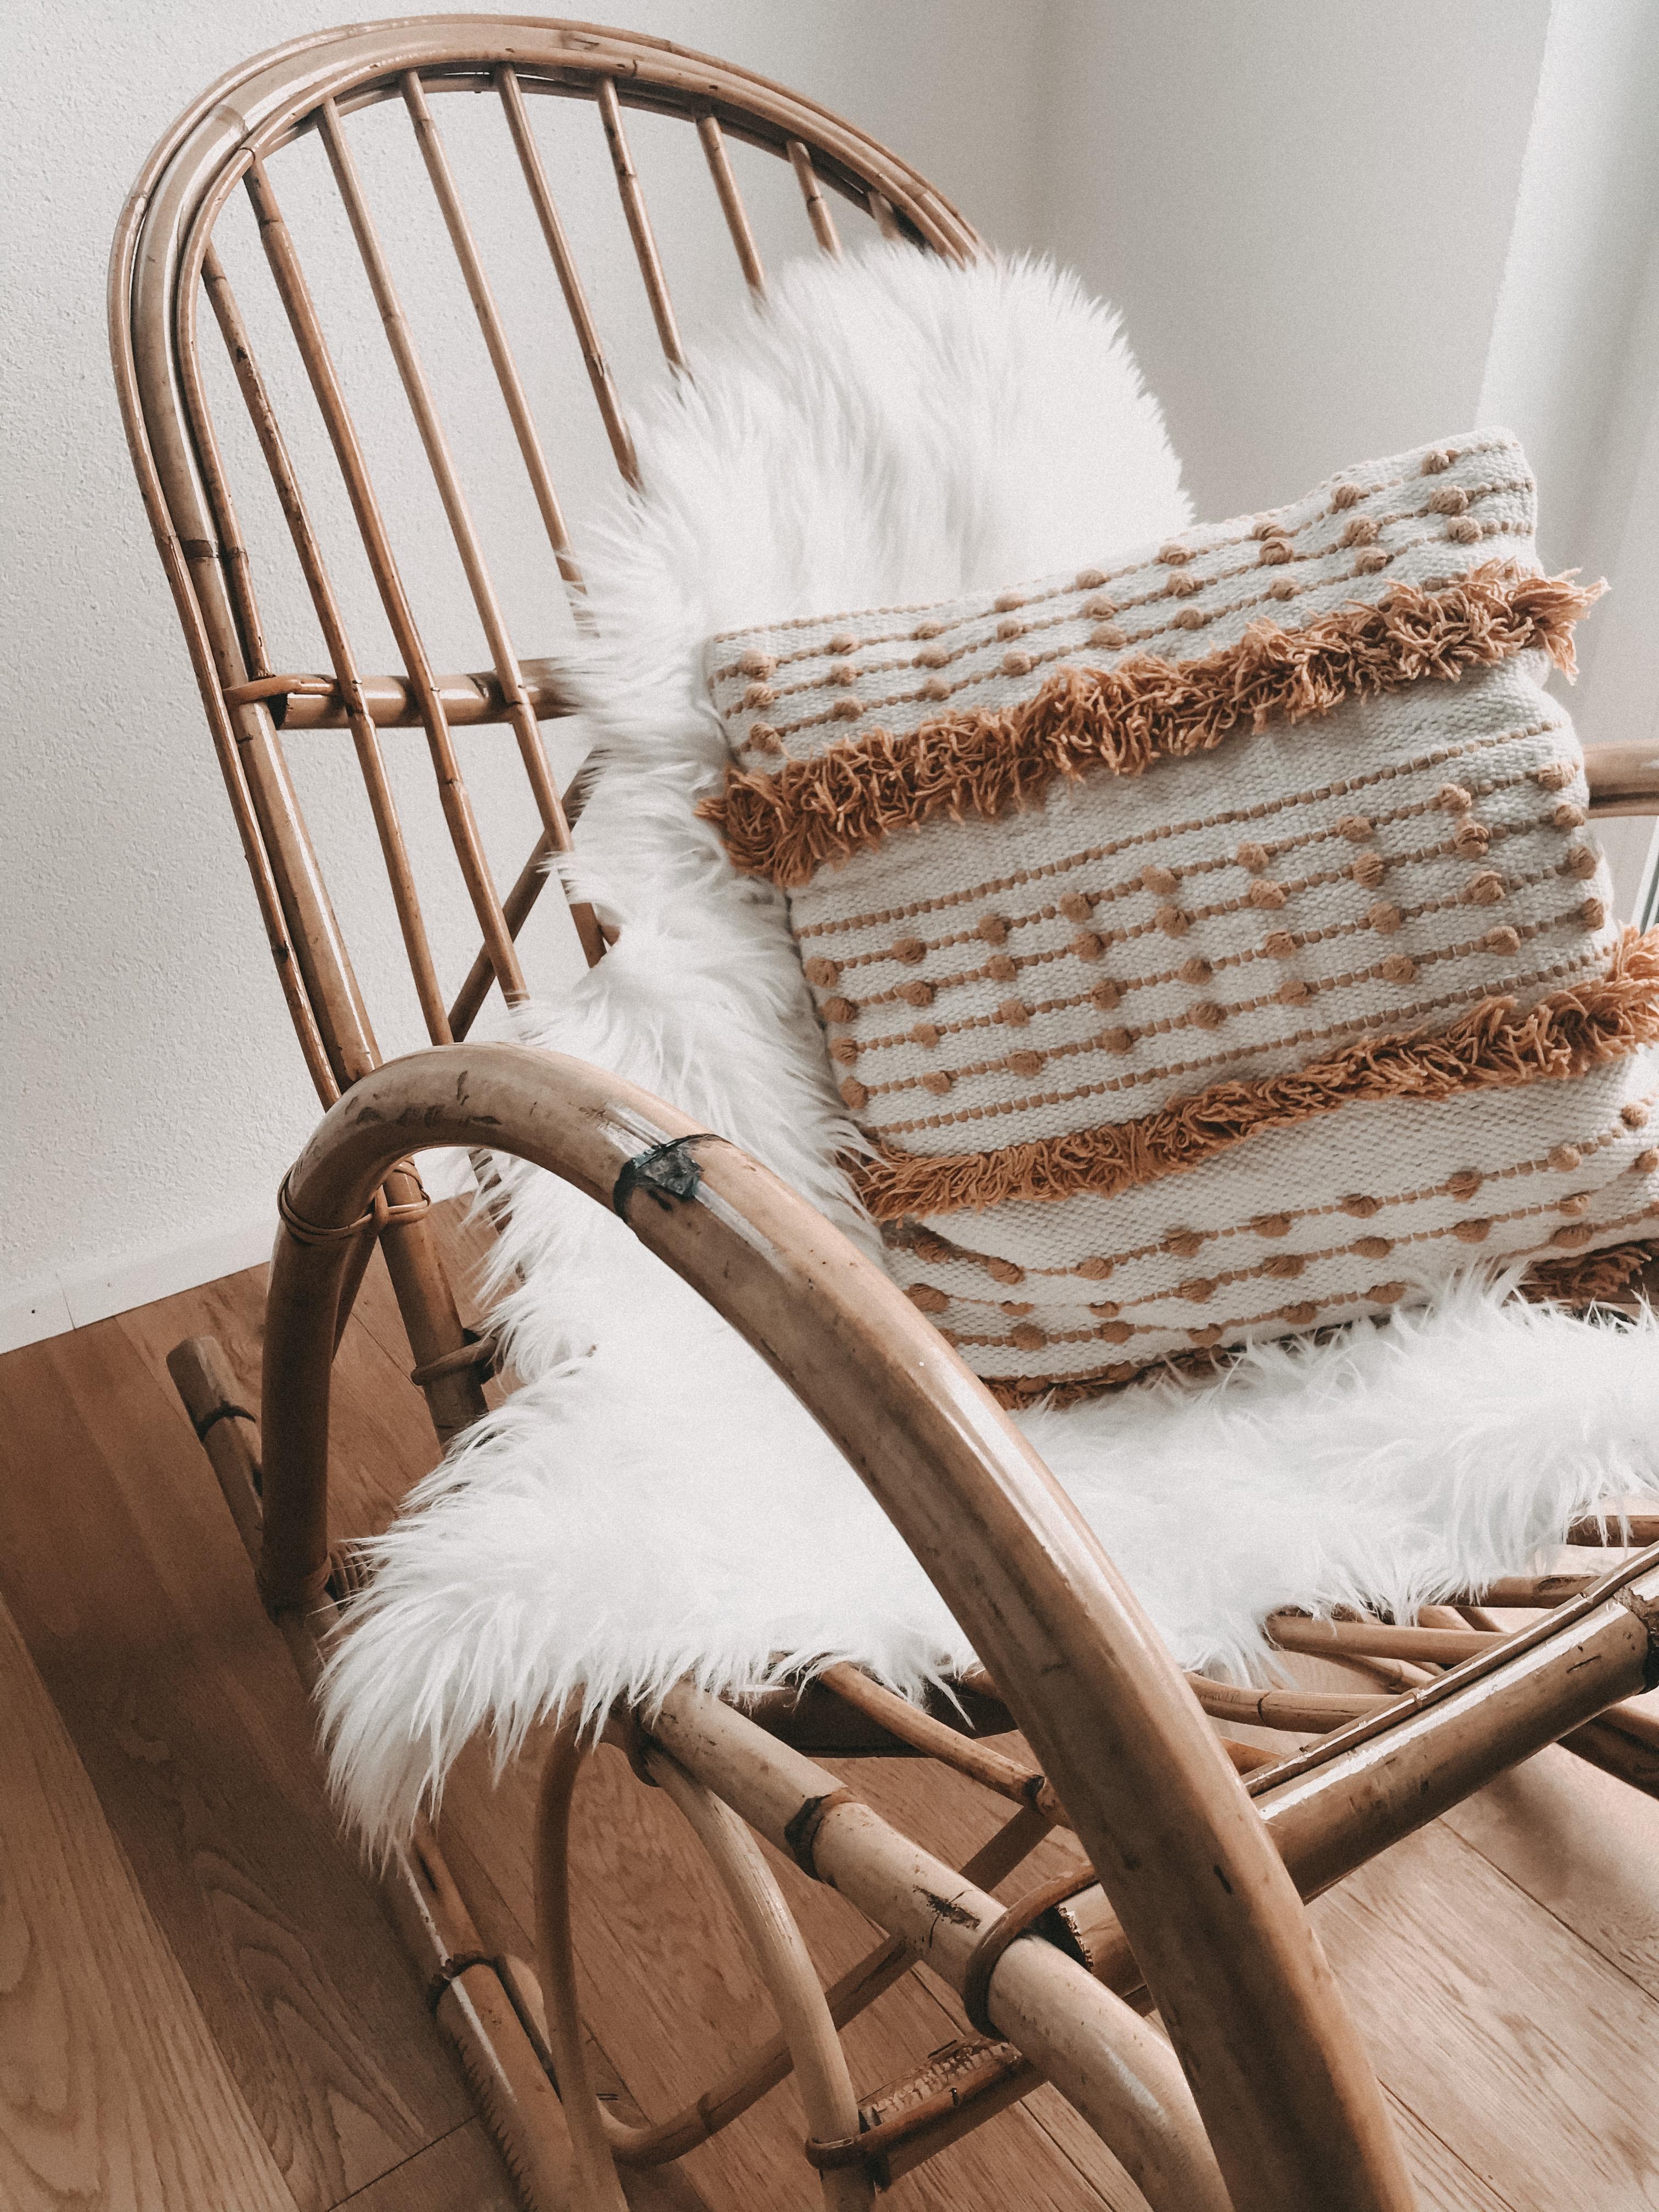 Gebrauchte Schätze: Das erste Möbelstück für‘s #babyzimmer ☺️ #flohmarktfund #schaukelstuhl #ebay